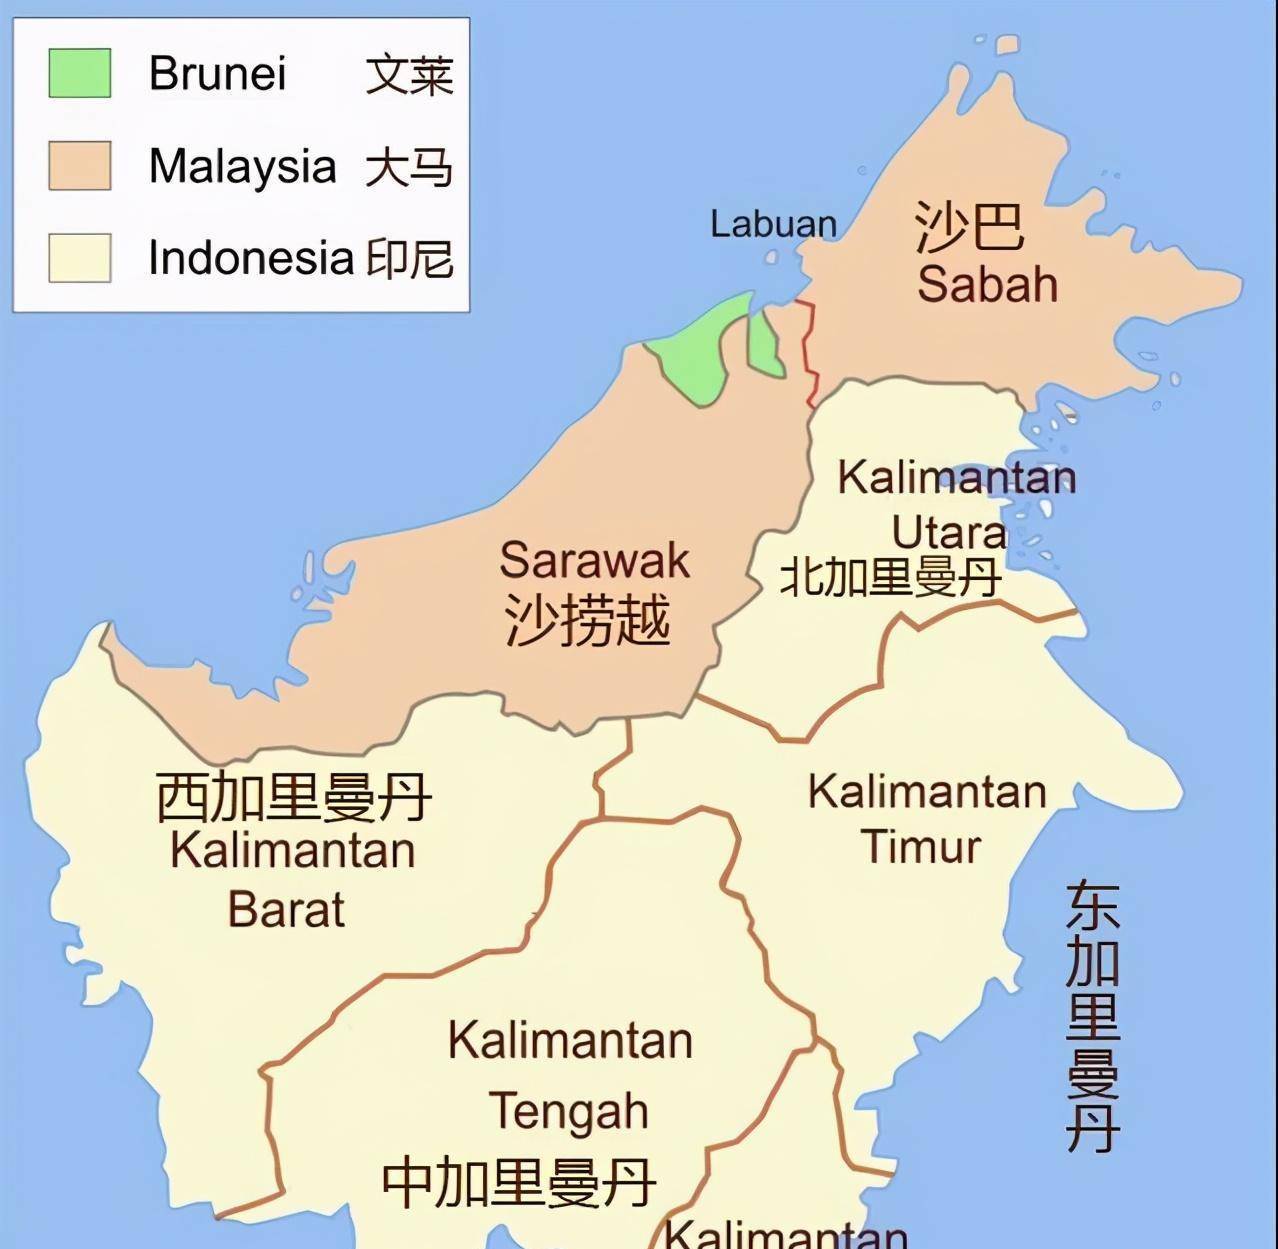 其岛东部,是印尼的一级行政区,直接受印尼的管理,就像中国的各个省份